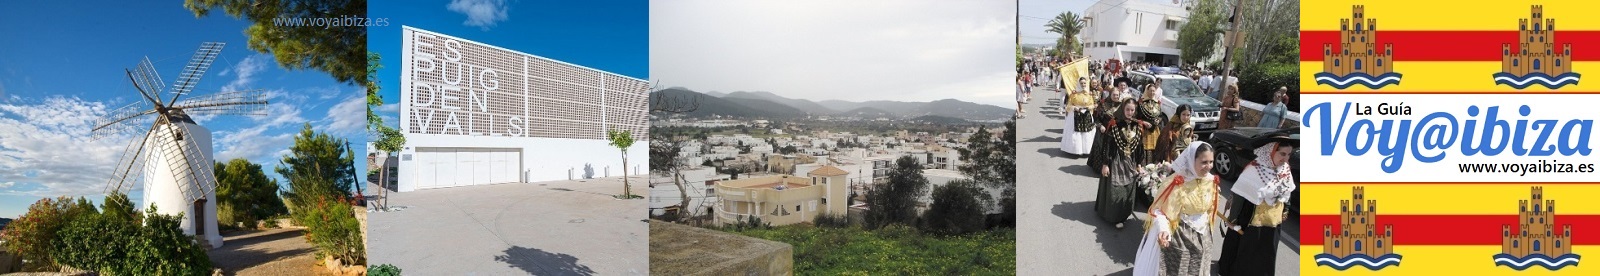 Puig d'en Valls, Ibiza